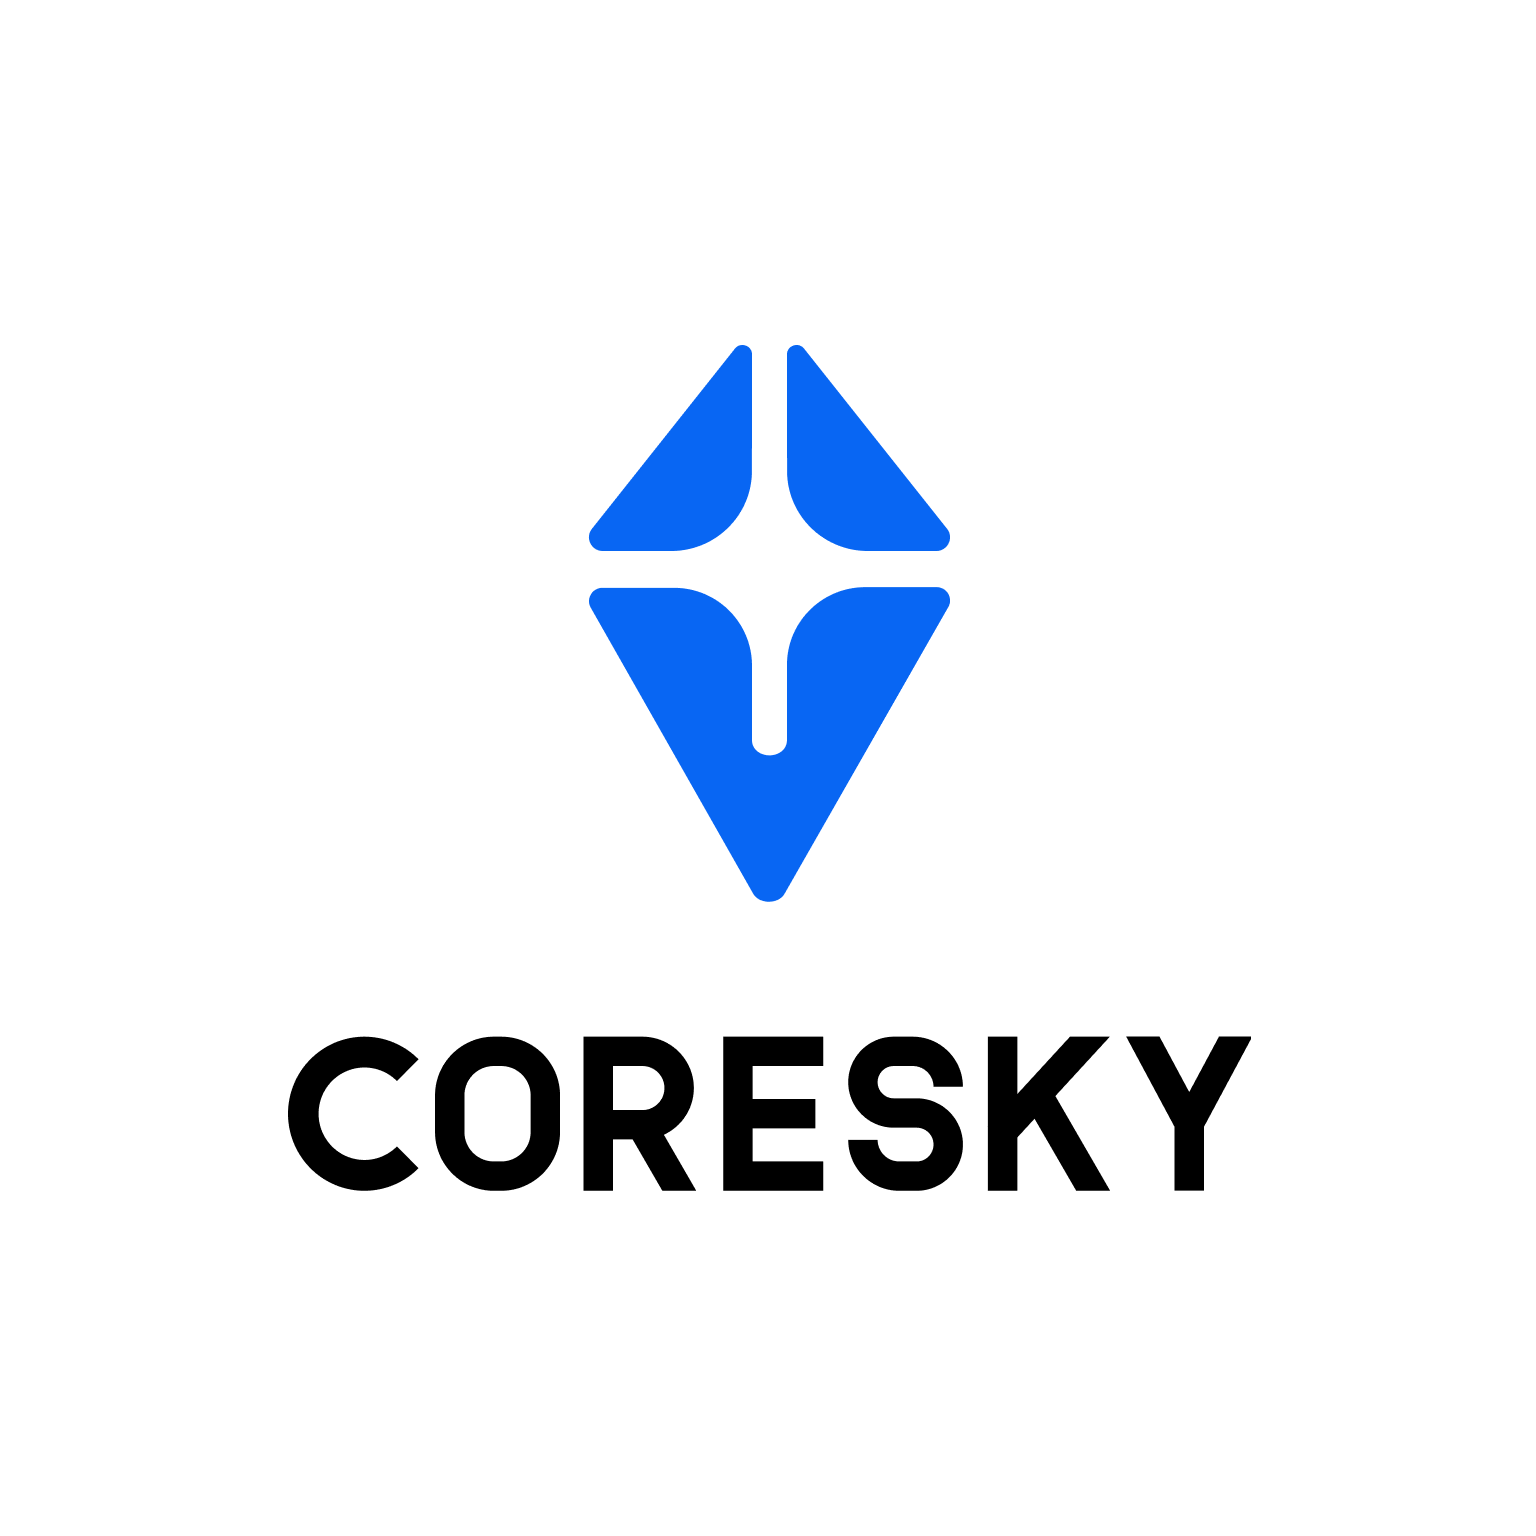 Coresky